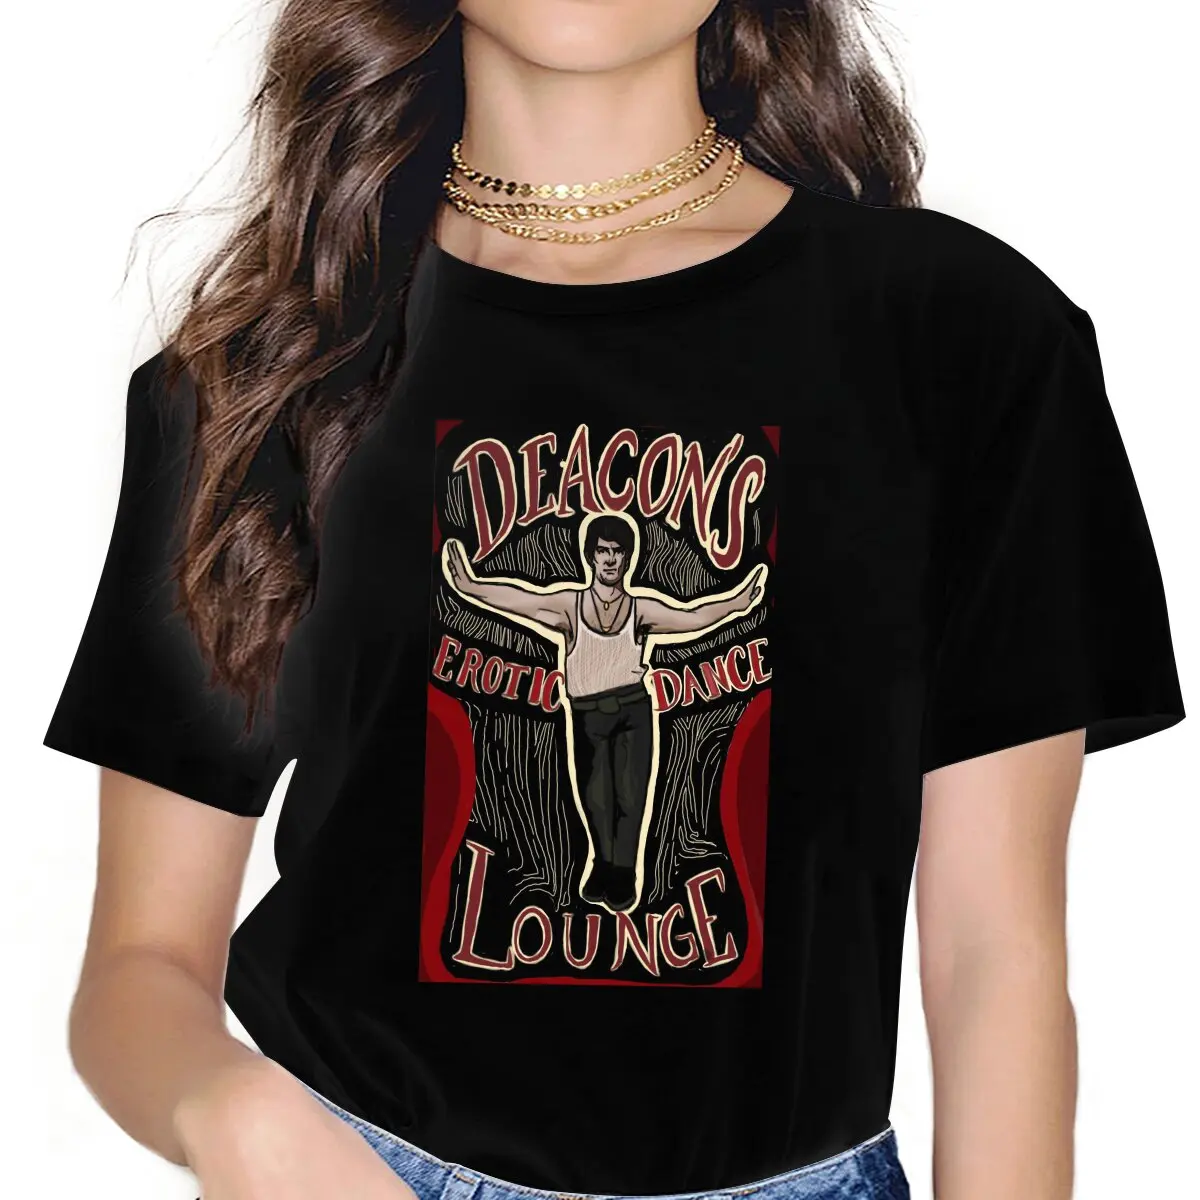 Женская одежда Deacon's Erotic Dance Lounge What We Do In The Shadows TV, футболка в готическом Стиле, Винтажный Женский Топ